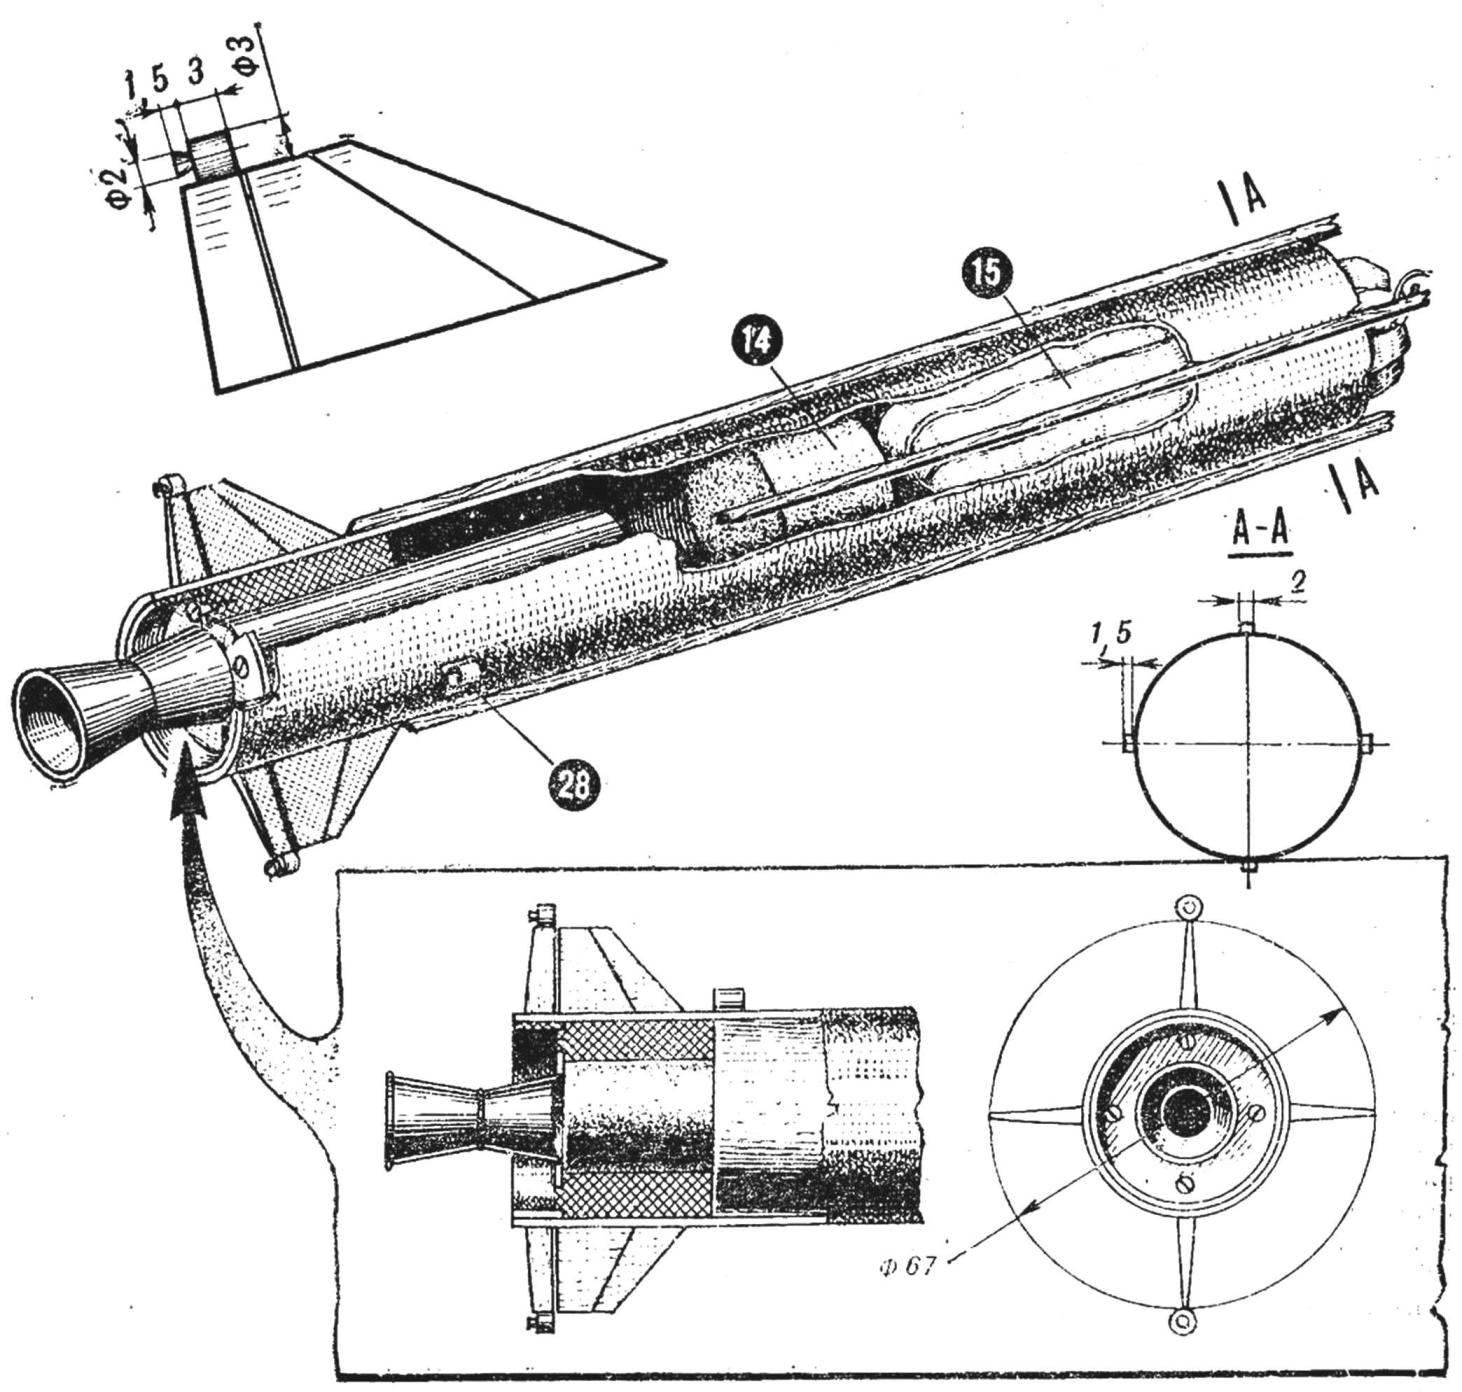 Рис. 1. Внешний вид и конструкция модели ракеты «Диамант-В»